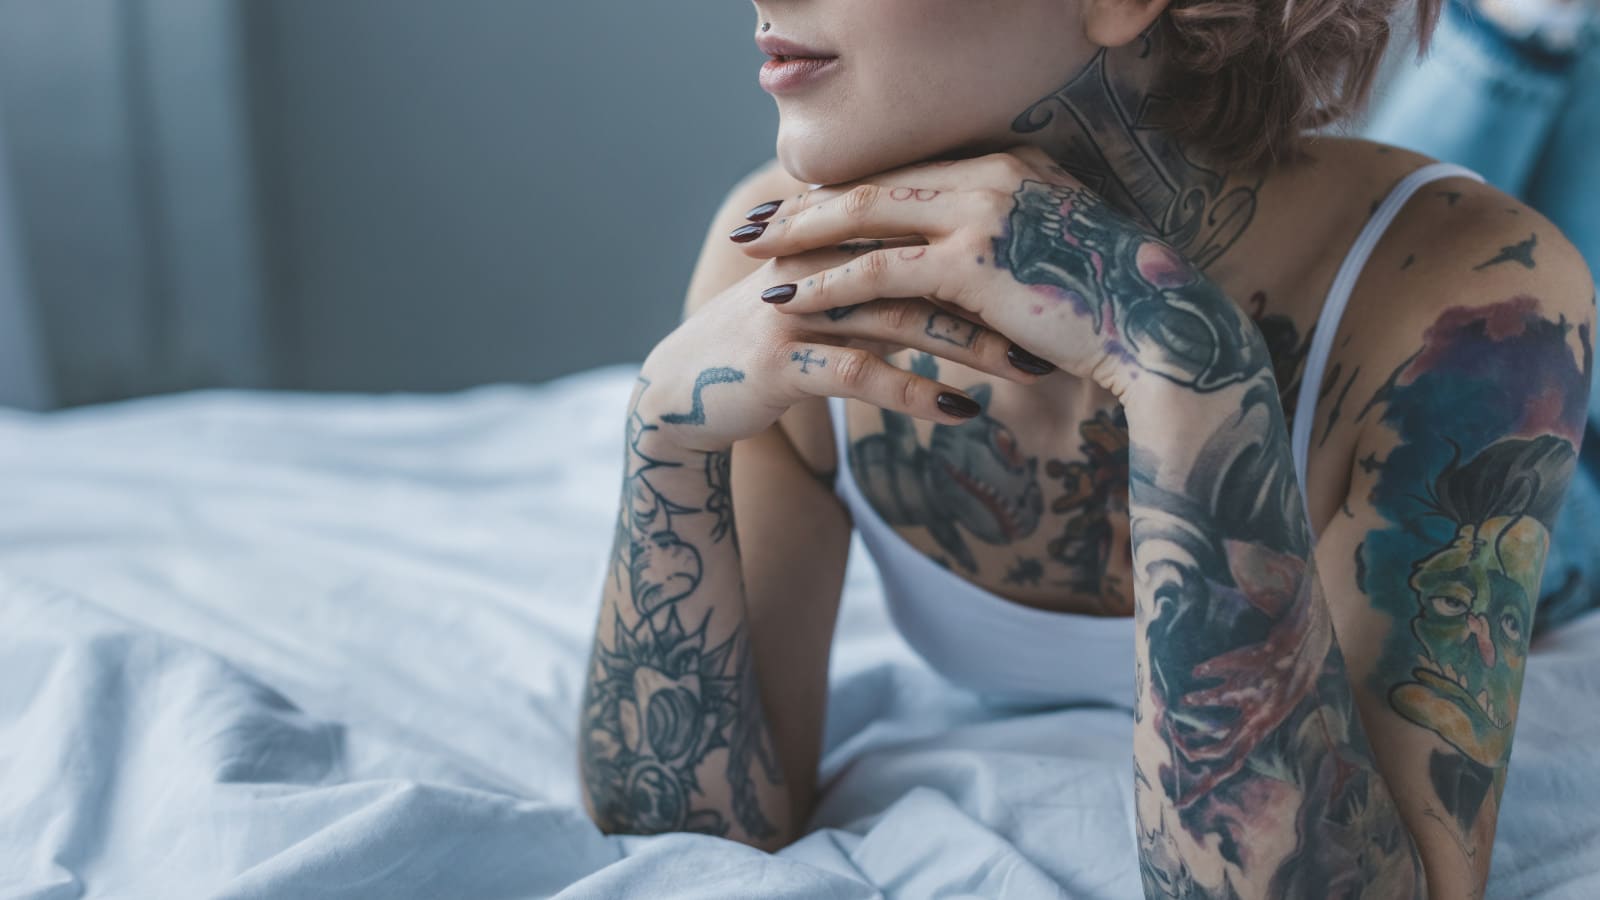 Tatuaggi: i pregiudizi nei confronti delle donne tatuate - Psicologia